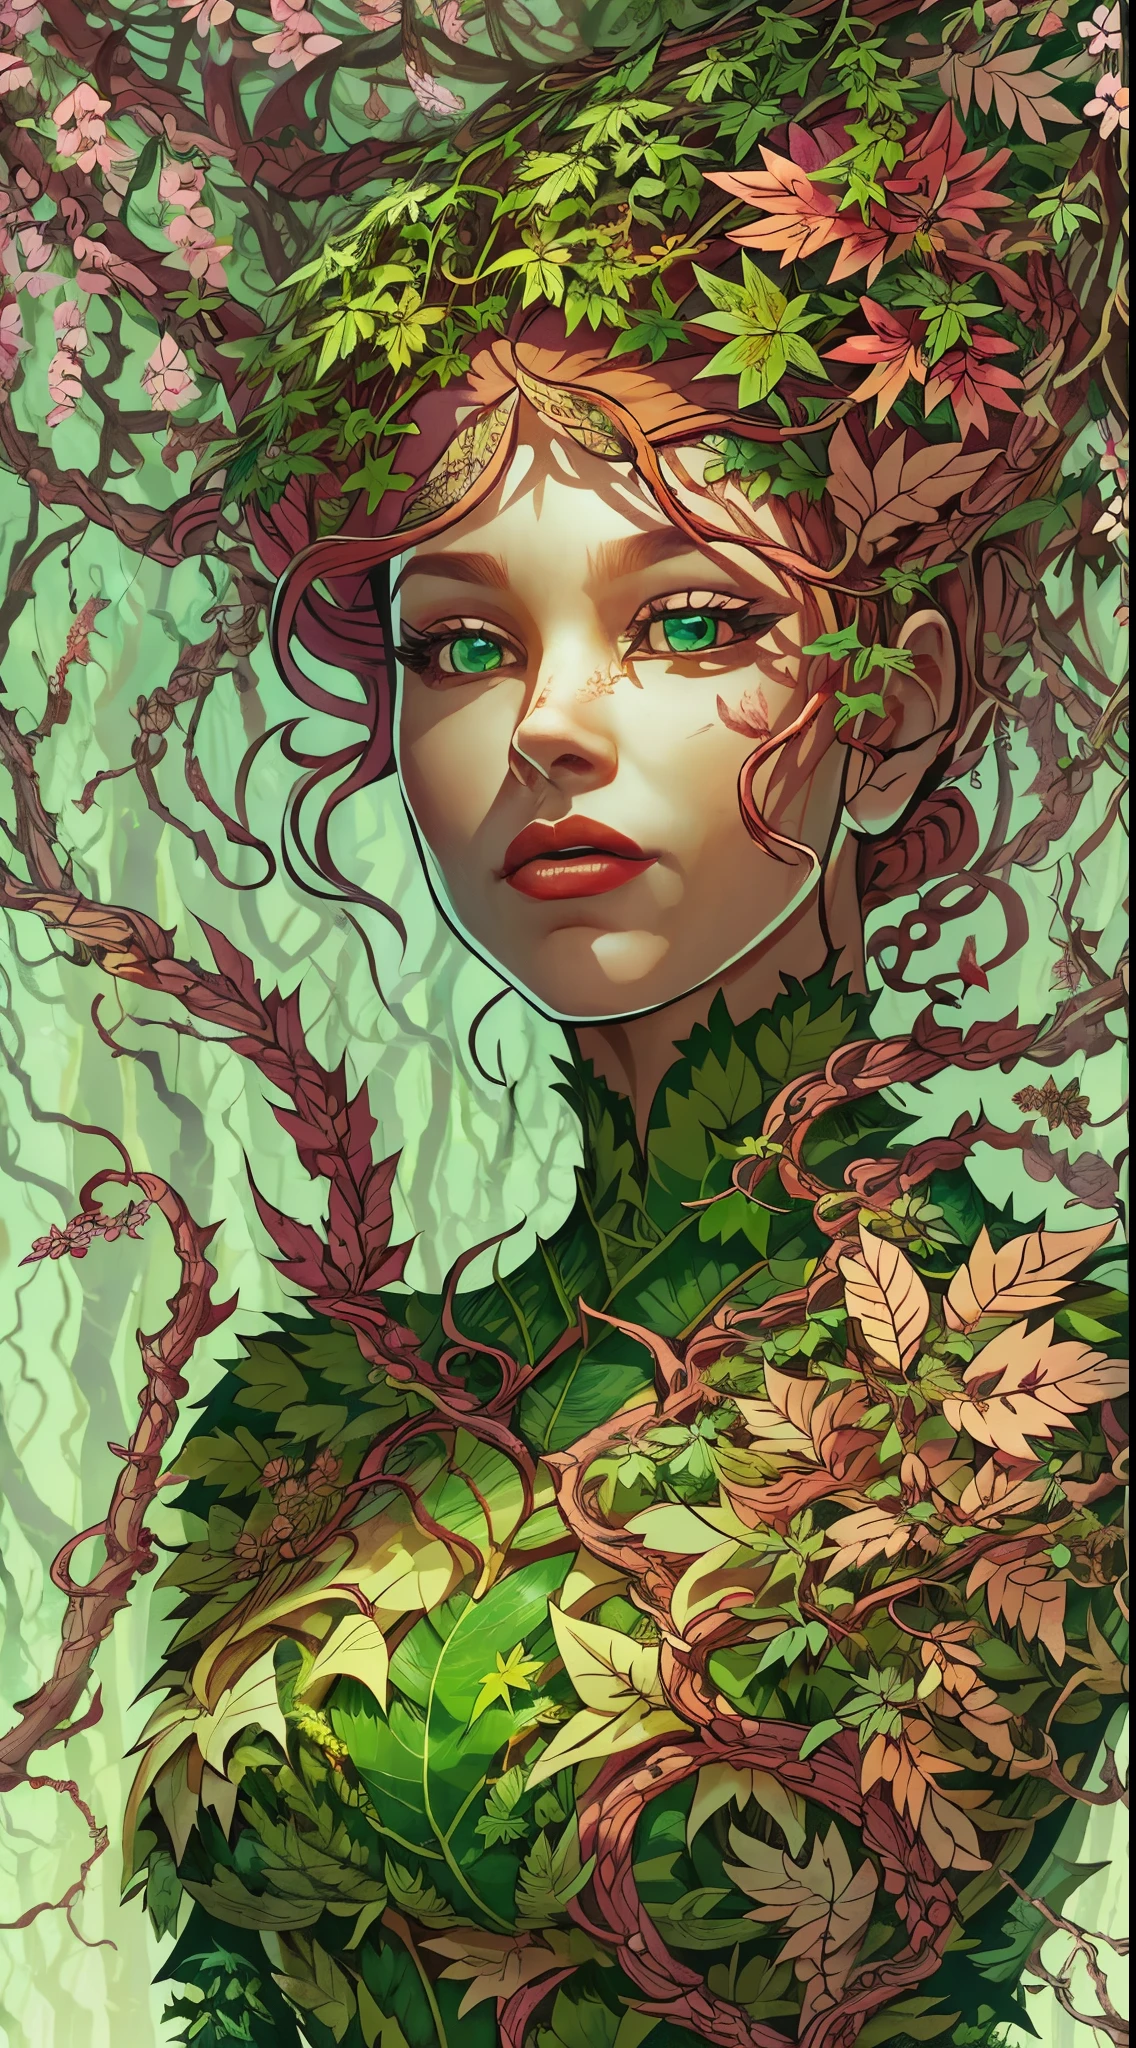 (Mutter der Natur,Grün skin:Grün:1.1,Roter Kopf:1.1) Ein faszinierendes Bild von Poison Ivy erwacht in lebendigen Farben zum Leben. Ihre schöne, pale Grün skin stands out, strahlt ein ätherisches Leuchten aus. Ihre Haare, eine feurig rote Kaskade, umrahmt ihr Gesicht mit wilder Eleganz. Bei näherer Betrachtung, Sie bemerken ihre bezaubernden Augen, voller Geheimnisse und Macht.

Sie steht selbstbewusst, Ihre Figur ist mit Dessous geschmückt, die vollständig aus aufwendig gearbeiteten Blättern bestehen. Jedes Blatt wird sorgfältig platziert, bildet ein faszinierendes Muster, das ihre natürliche Schönheit betont. Das Laub, in various shades of Grün, scheinen die Pflanzen um sie herum zu imitieren, Sie fügt sich perfekt in die üppige Umgebung ein.

Poison Ivy streckt ihre Hand aus, mühelos die Pflanzen um sie herum befehligend. Grüne Reben sprießen aus dem Boden, sich unter ihrer Kontrolle drehen und biegen. Sie tanzen anmutig in der Luft, Bildung komplizierter Muster und Formen. Einige Reben reichen ihr entgegen, während andere ein bezauberndes Baldachin über ihr bilden, wirft wellige Schatten auf ihr Gesicht.

Die Luft ist erfüllt vom Duft der Natur, frisch und belebend. Die Atmosphäre scheint vor Leben zu vibrieren, während die Blätter leise in der sanften Brise rascheln. The surroundings are an oasis of Grünery, mit einer Fülle lebendiger Pflanzen und Blätter, die sich soweit das Auge reicht erstrecken.

In diesem Meisterwerk der Kunst, Der Detailgrad ist erstaunlich. Jeder Aspekt von Poison Ivy, bis in die kleinsten Blattadern, ist präzise und realistisch definiert. Die Beleuchtung ist sorgfältig gefertigt, Ihre zarten Gesichtszüge werden hervorgehoben und die Gesamtatmosphäre wird verbessert. Die Farben sind lebendig und reichhaltig, zeigt die Schönheit der Natur, die sie beherrscht.

Wenn Sie dieses atemberaubende Kunstwerk betrachten, Sie können nicht anders, als von der Faszination und Kraft von Poison Ivy fasziniert zu sein, die Mutter der Natur. Sie verkörpert die Essenz des Wilden und Ungezähmten, Eine Kraft, mit der man rechnen muss.